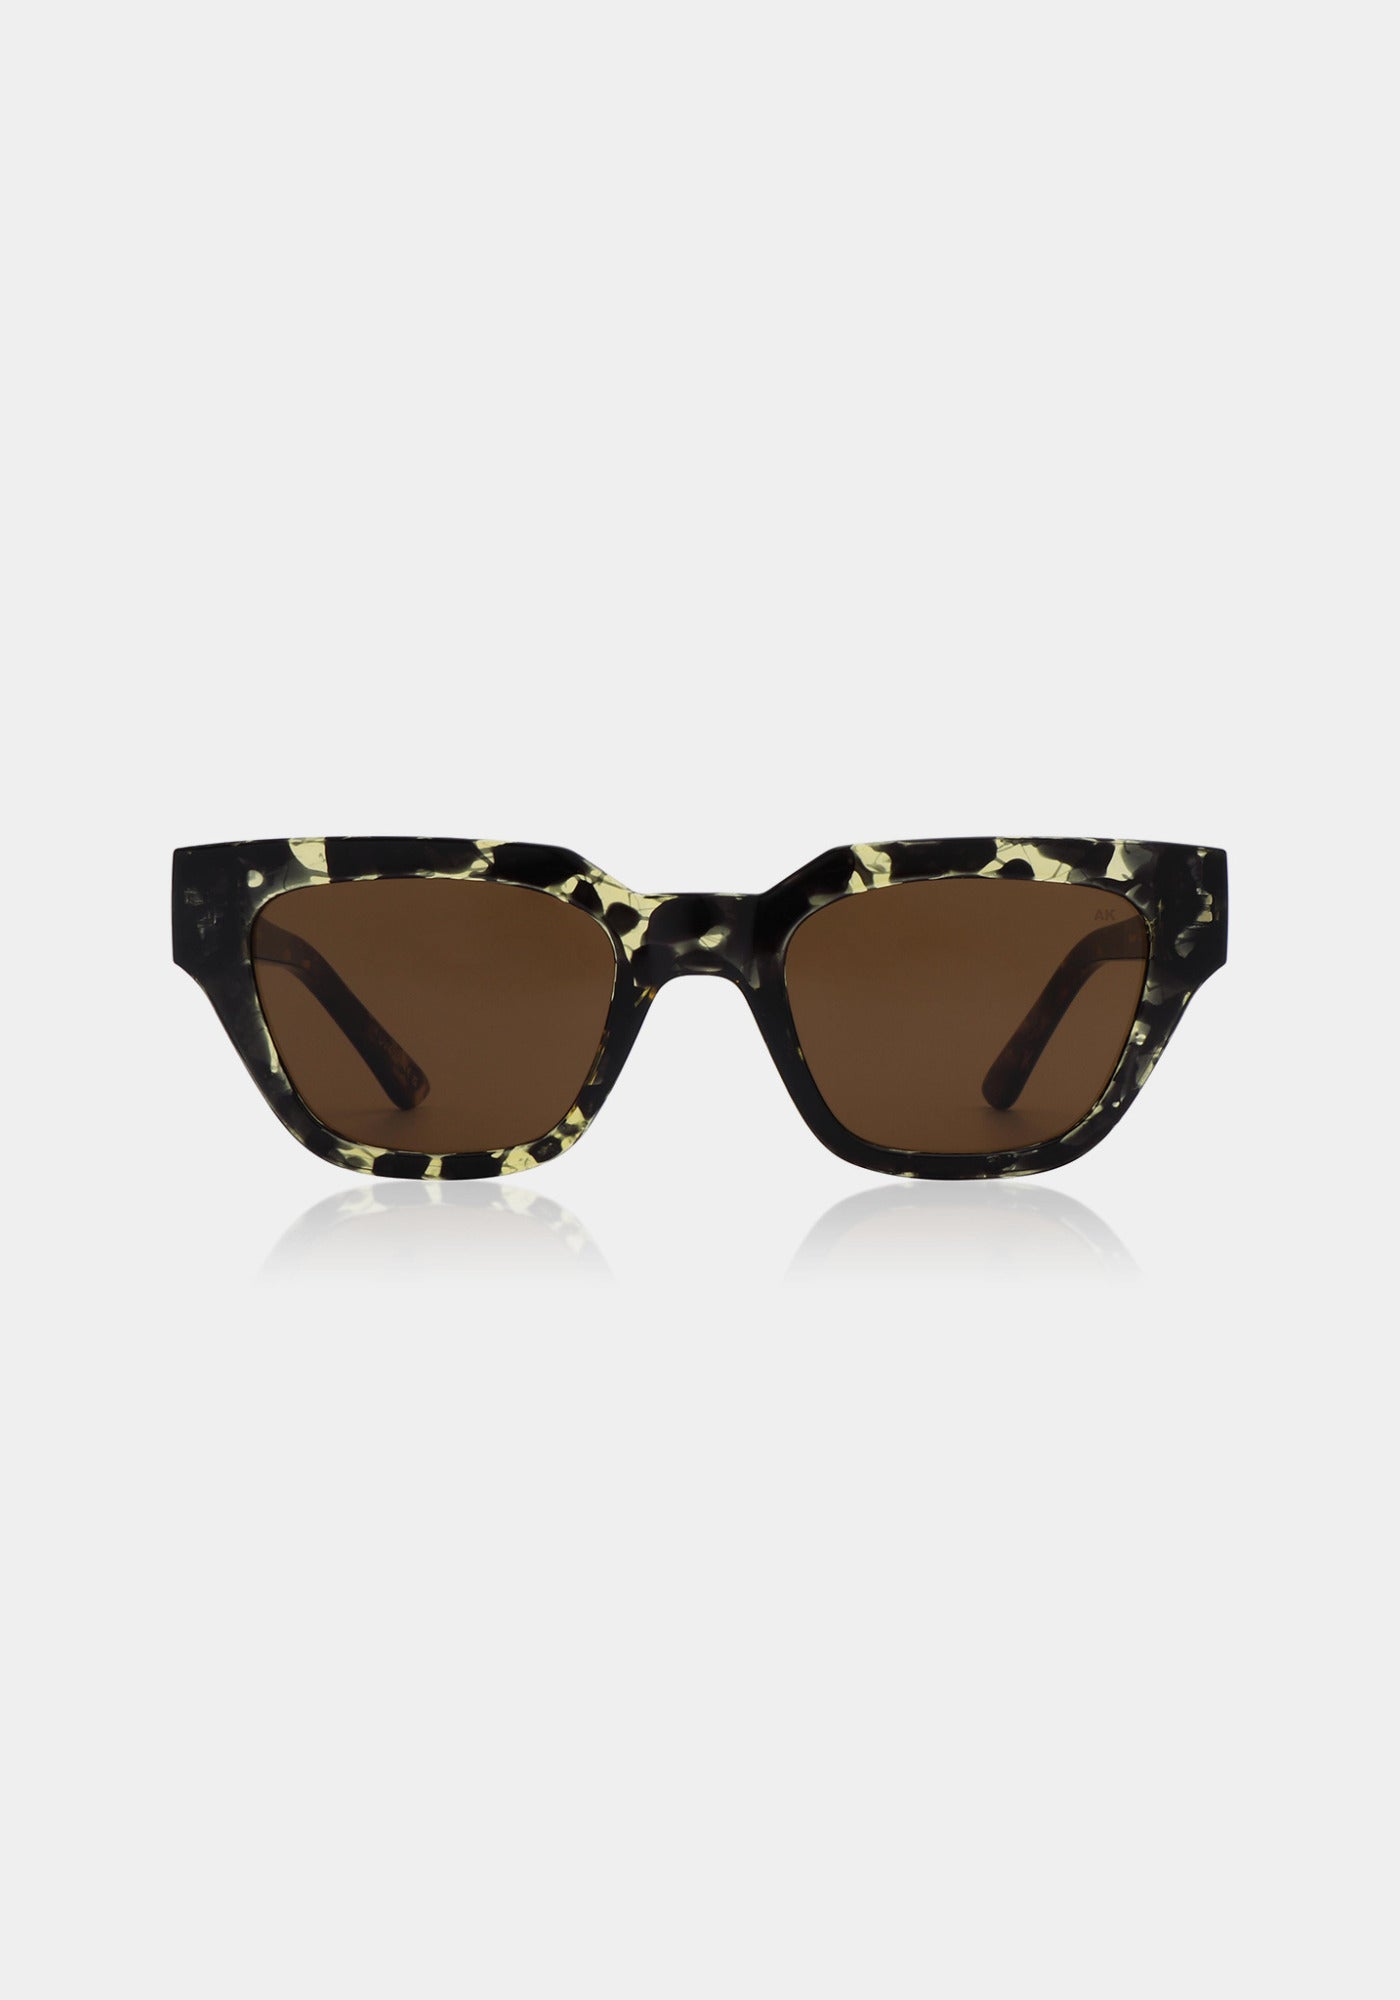 Les lunettes de soleil Kaws black yellow tortoise de chez A.Kjaerbede